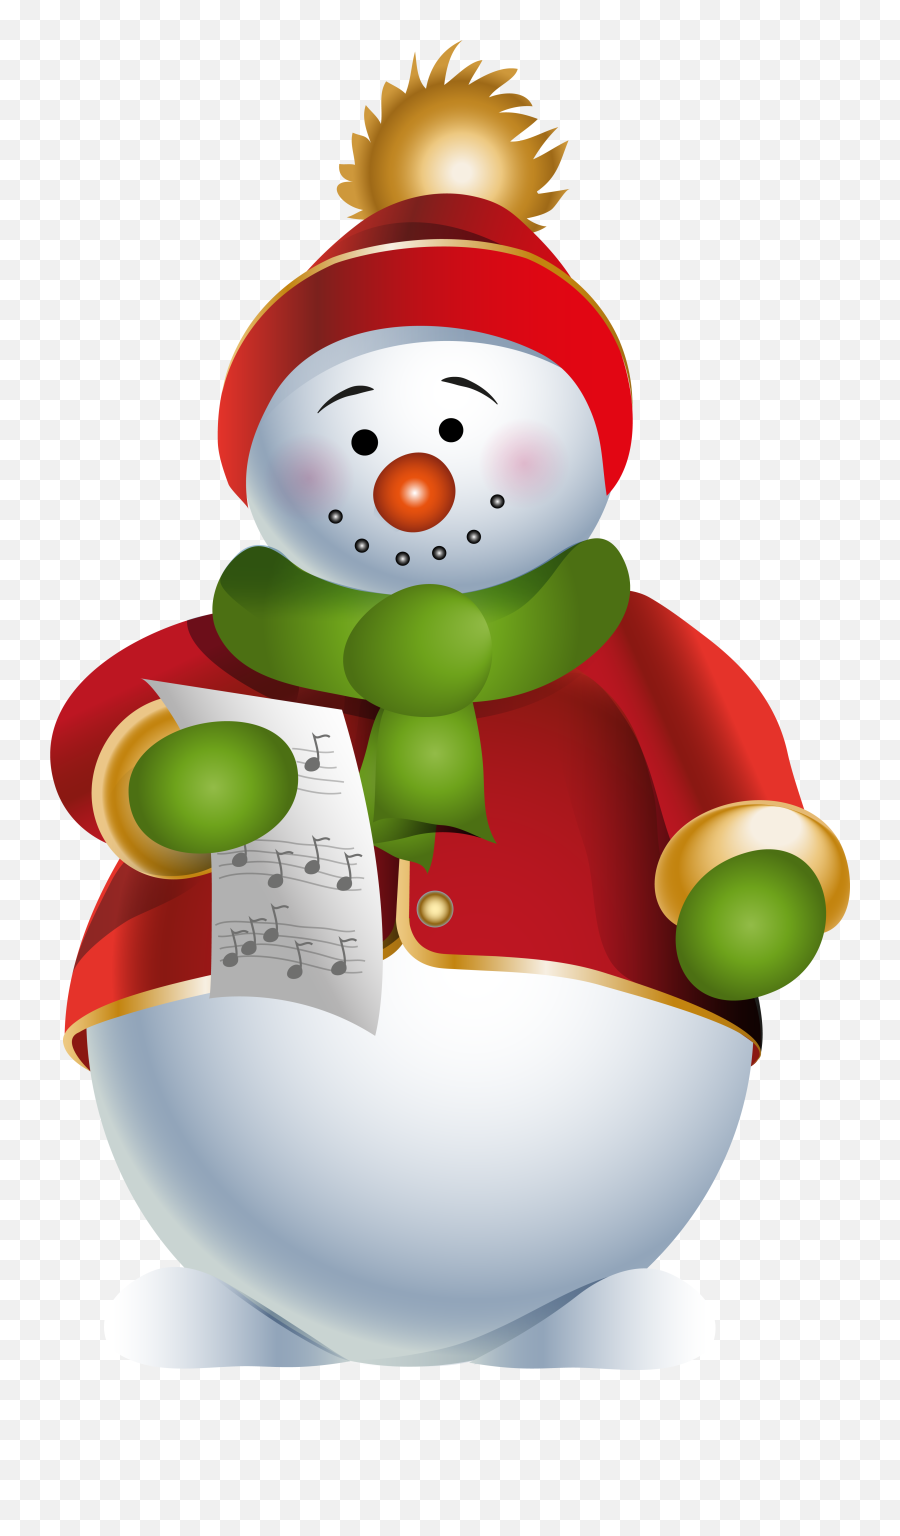 Sunglasses Clipart Snowman Sunglasses Snowman Transparent - Transparent Christmas Snowman Clipart Emoji,Snowman Emoji